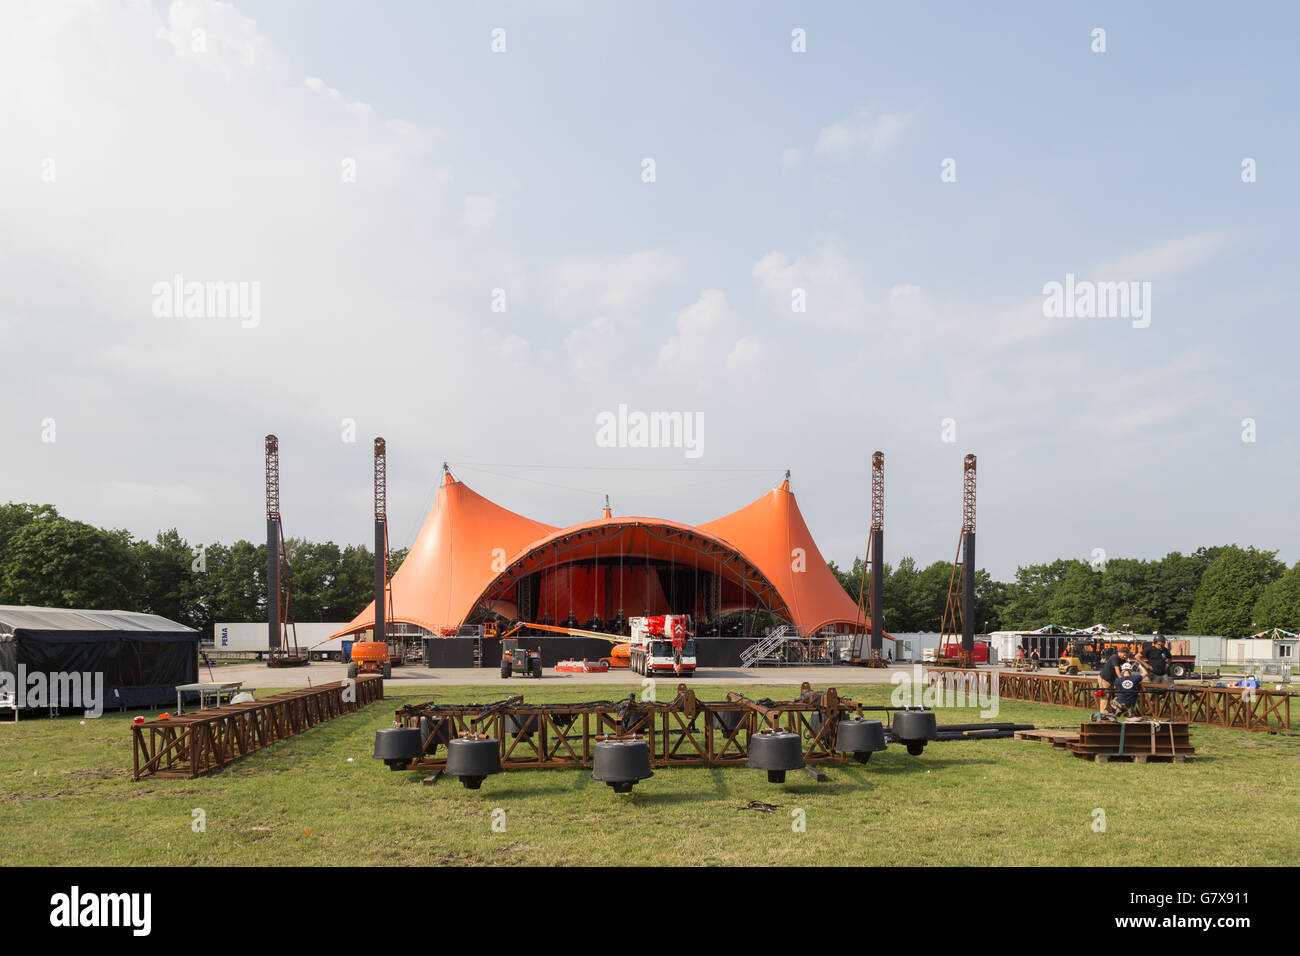 Roskilde, Dinamarca - 25 de junio de 2016: la etapa de naranja en construcción para el Festival de Roskilde 2016 Foto de stock